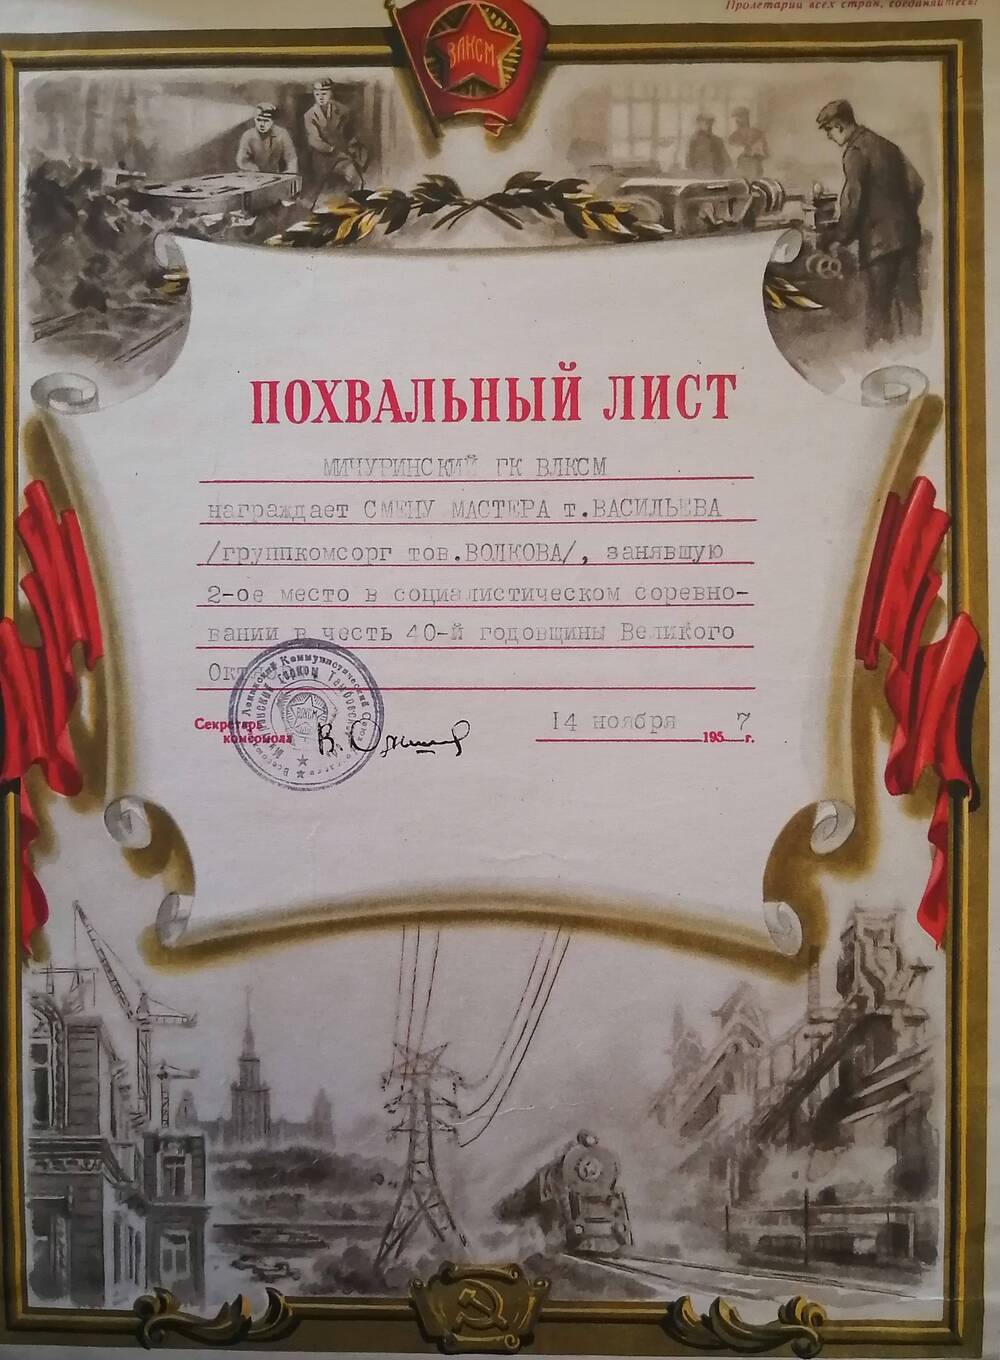 Похвальный лист, врученный смене мастера т. Васильева, за 2-ое место в социалистическом соревновании в честь 40-й годовщины Великого Октября